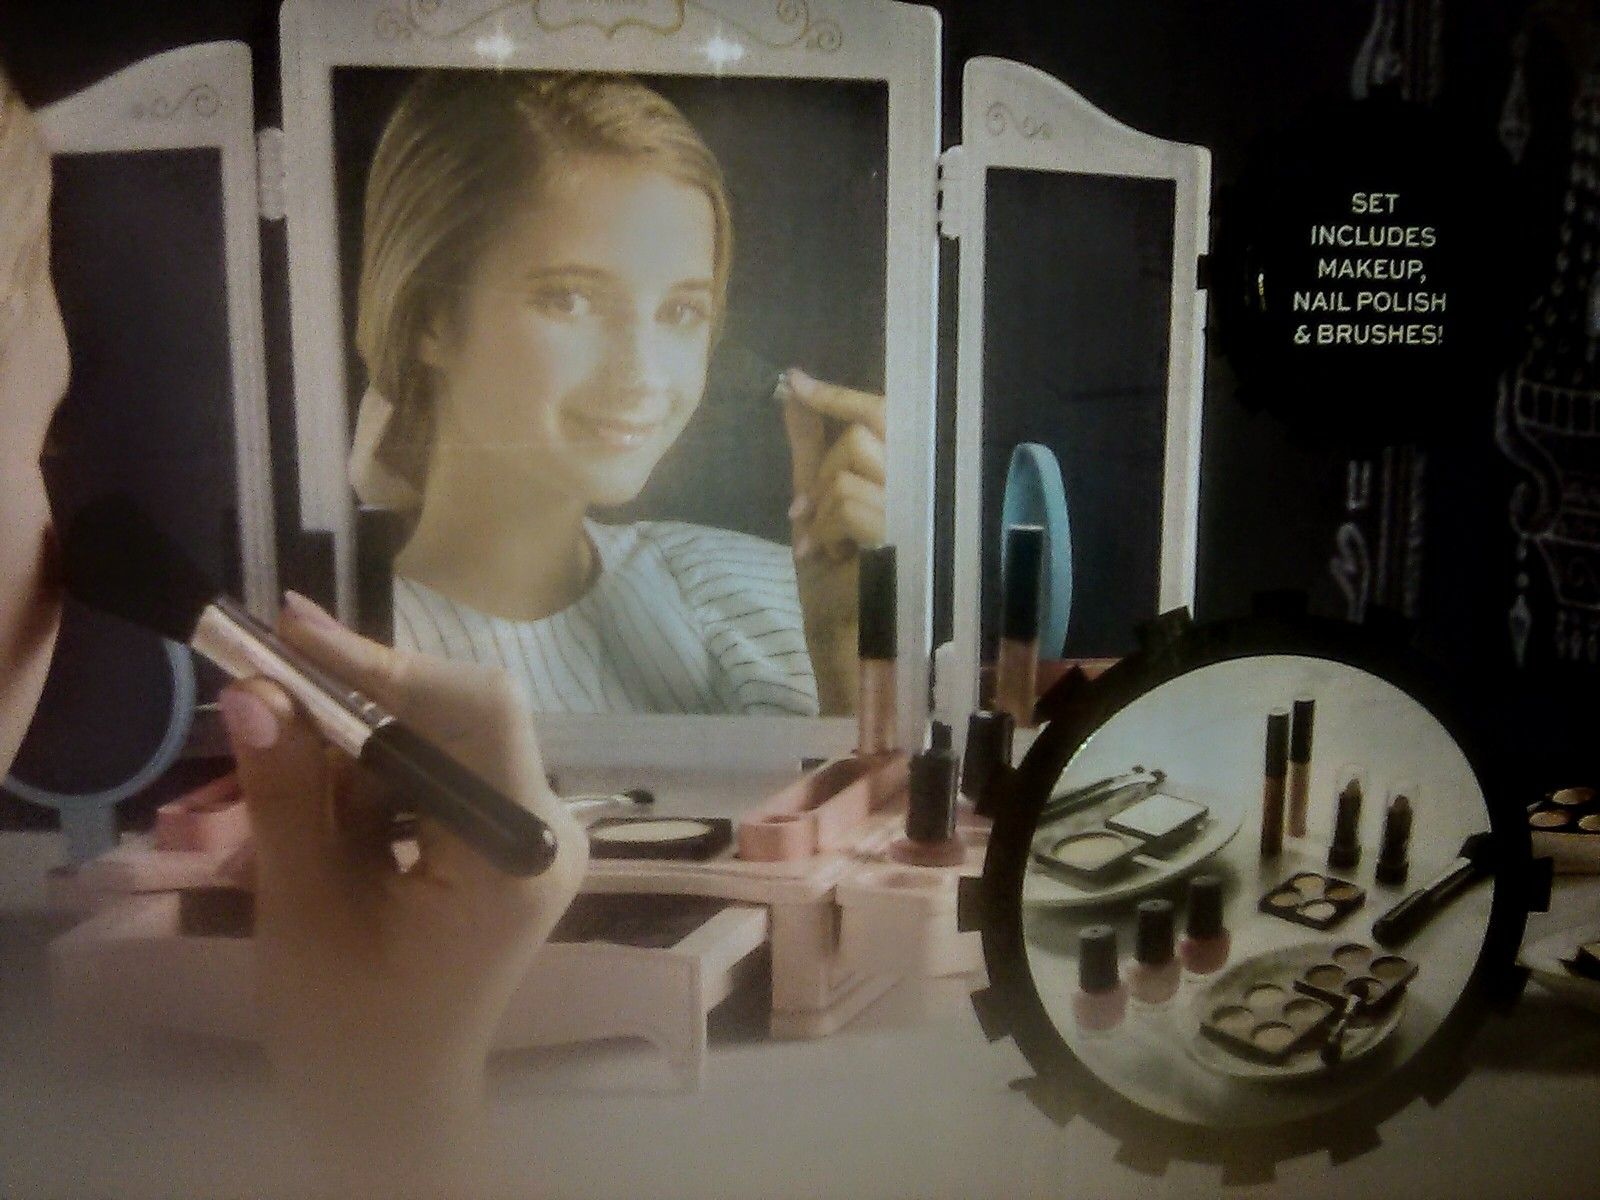 Vanity makeup studio "New w/extras"